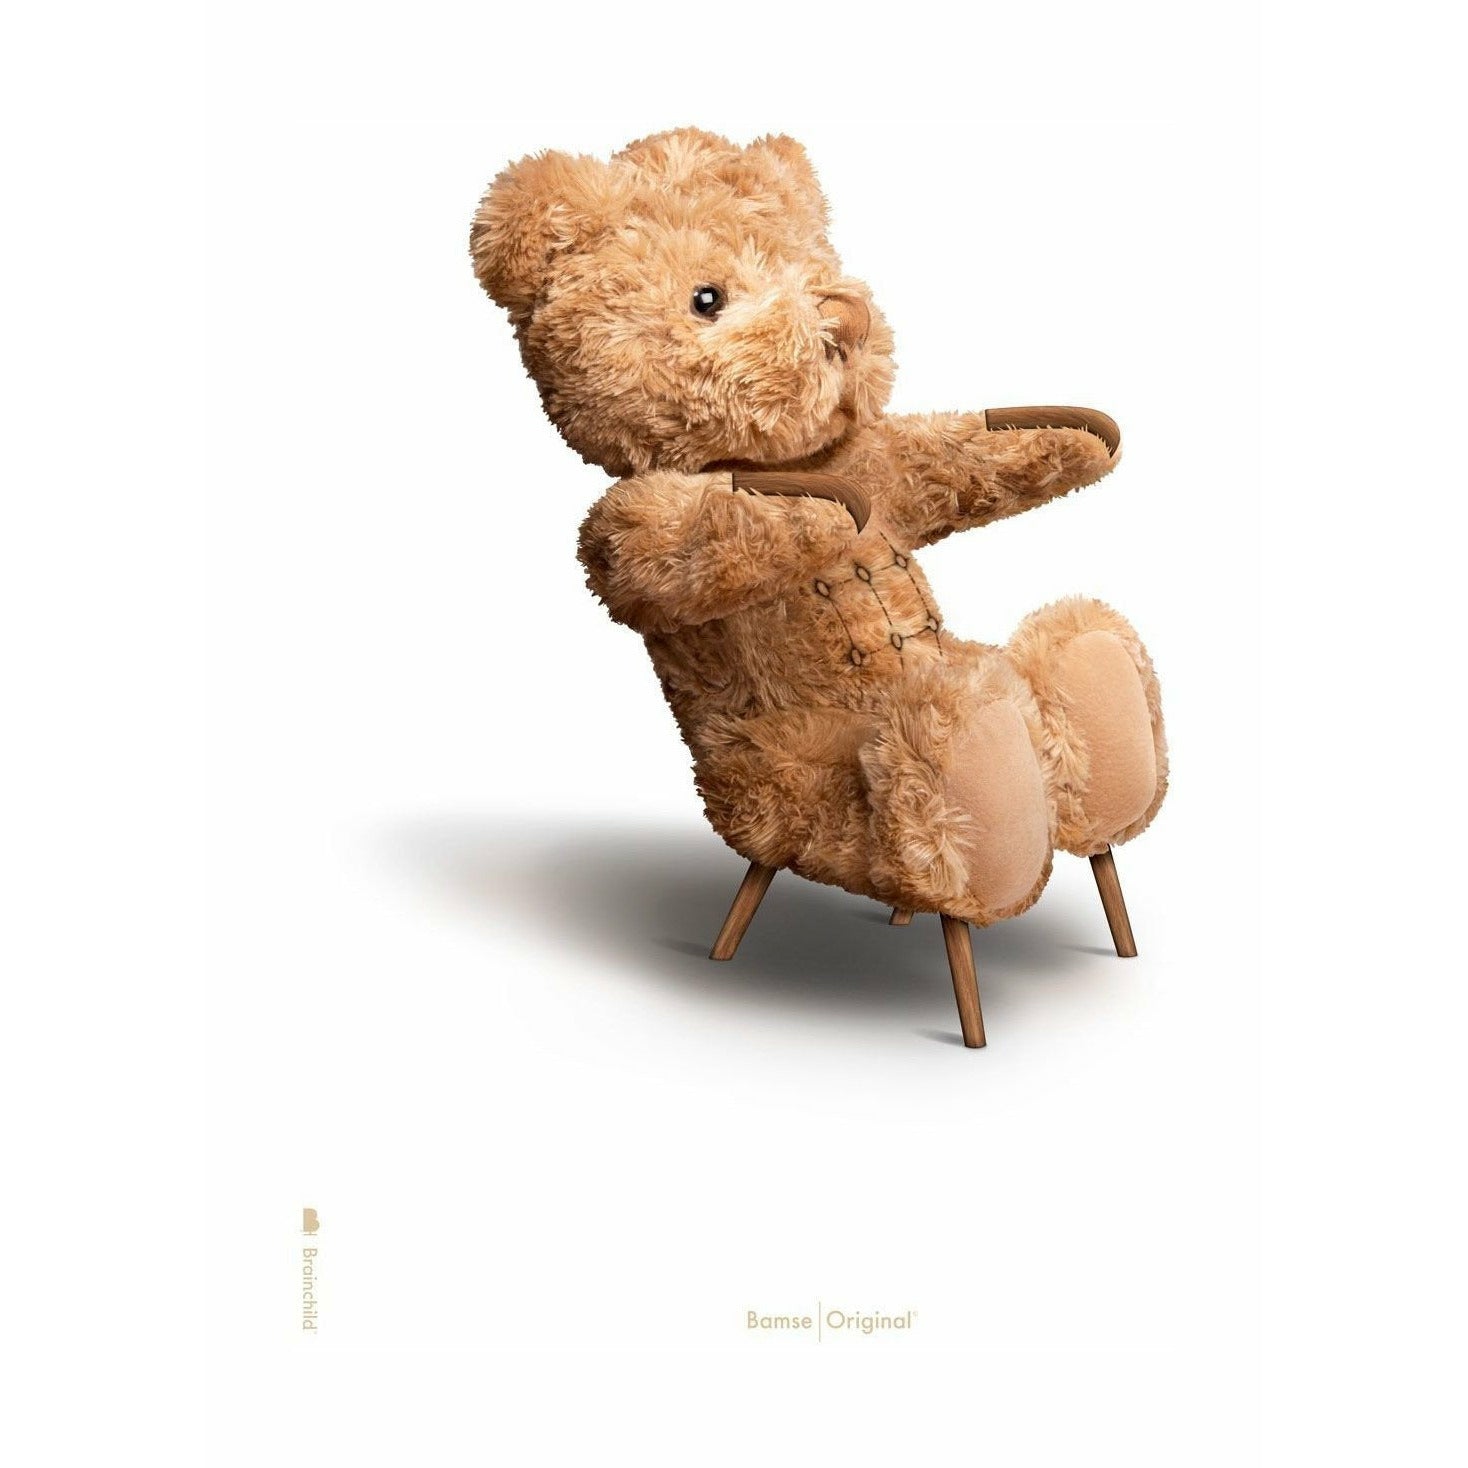 Pomysny plakat Teddy Bear Bez ramki 50x70 cm, białe tło